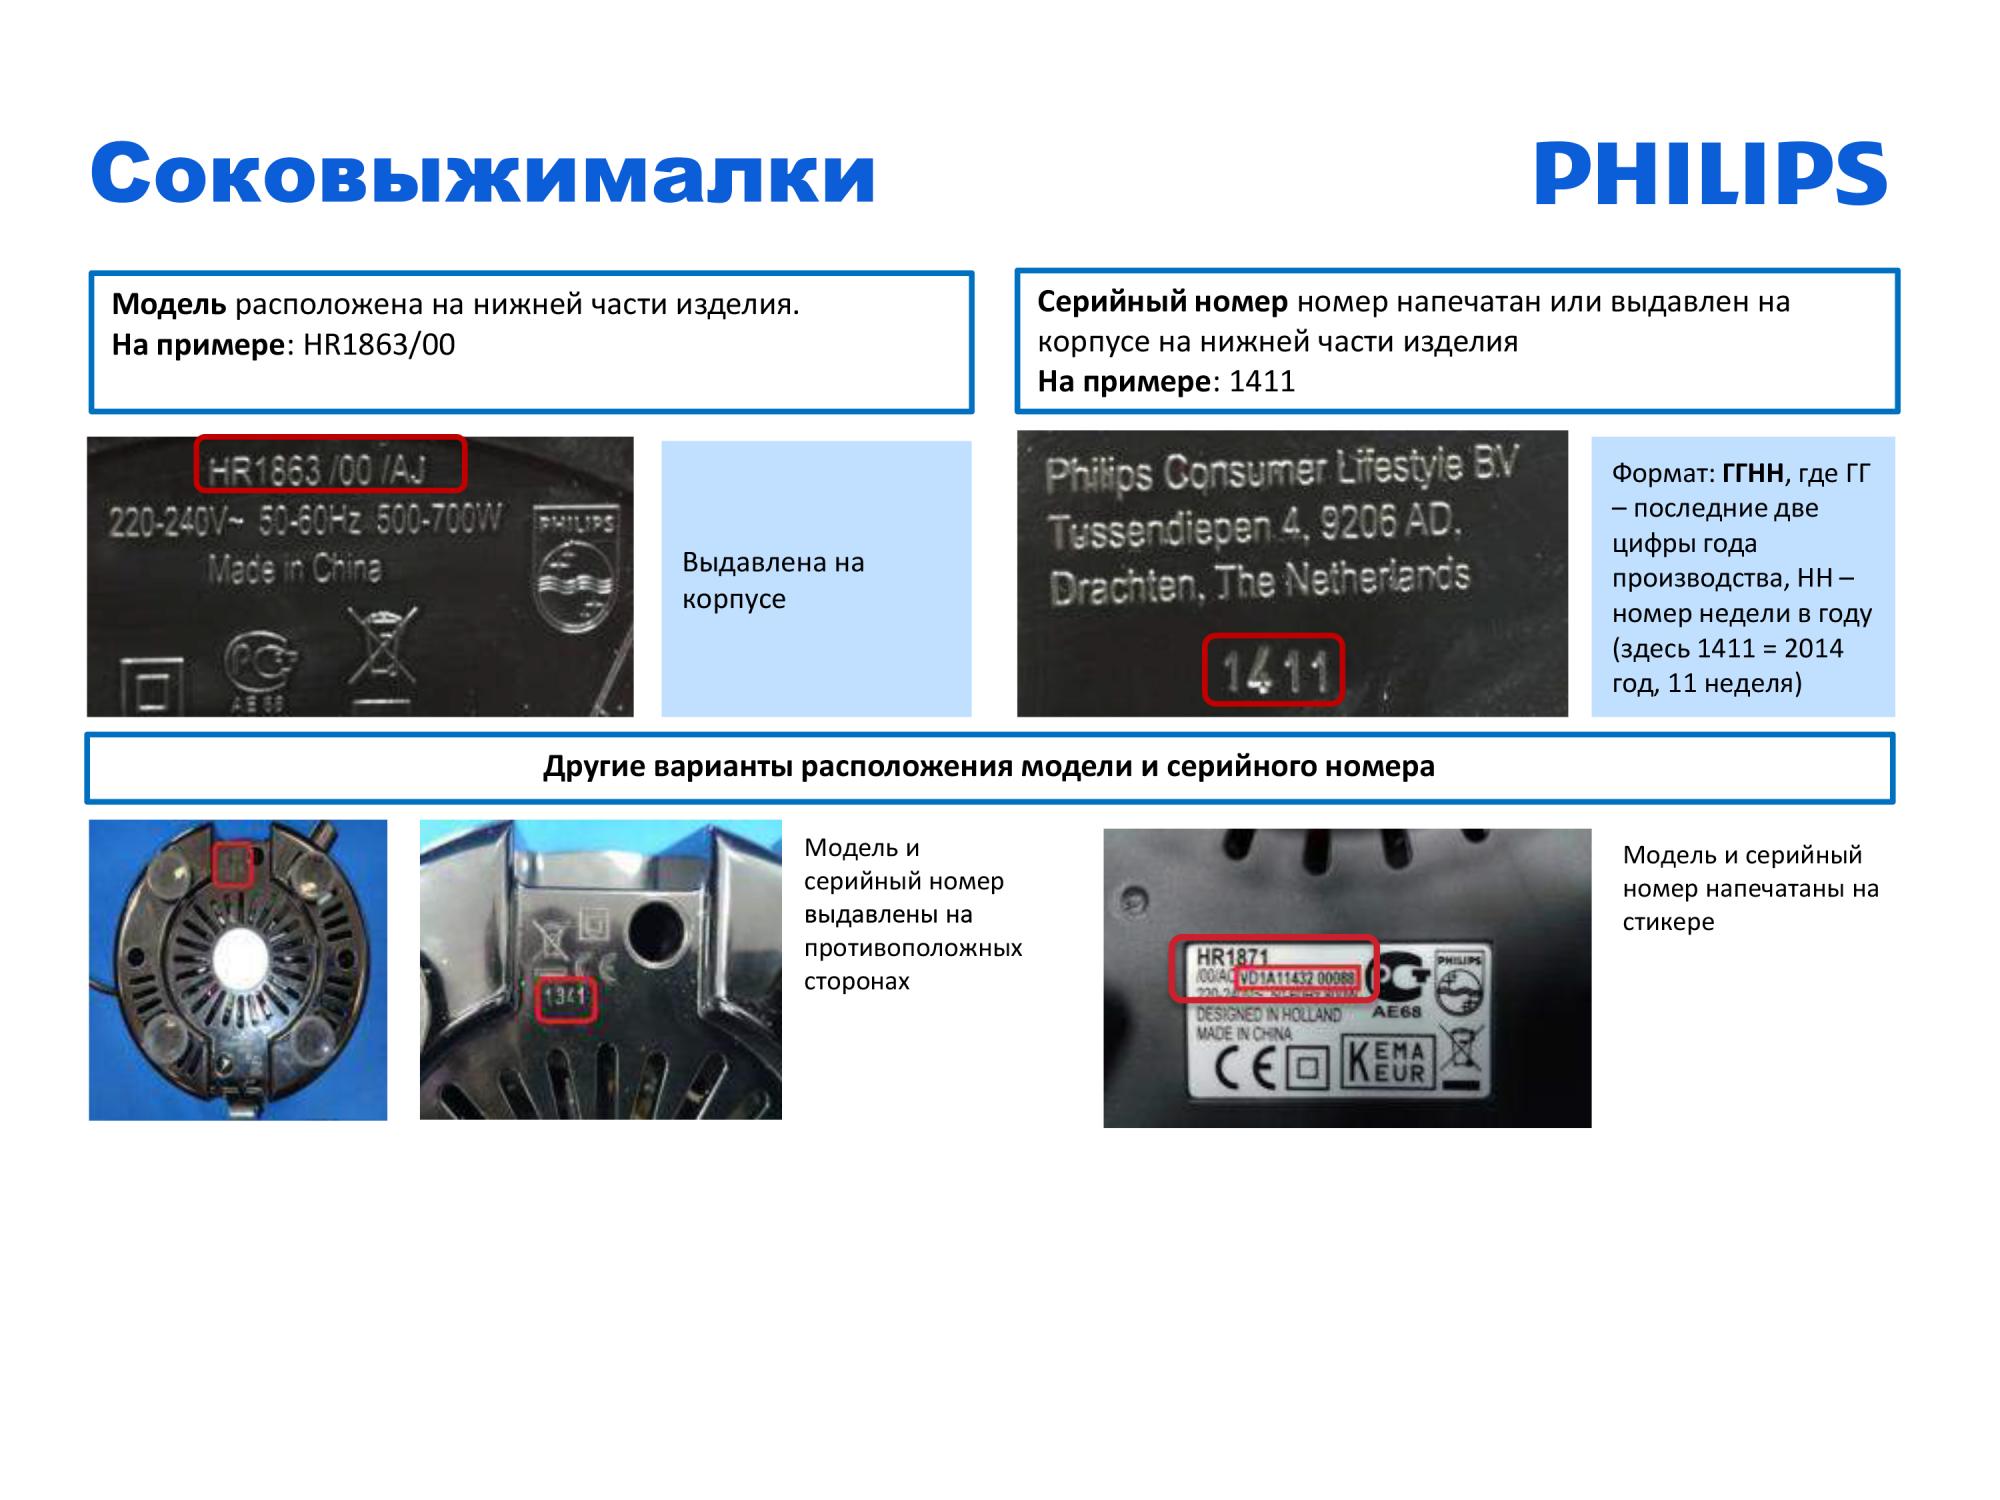 Как определить модель соковыжемалок Philips